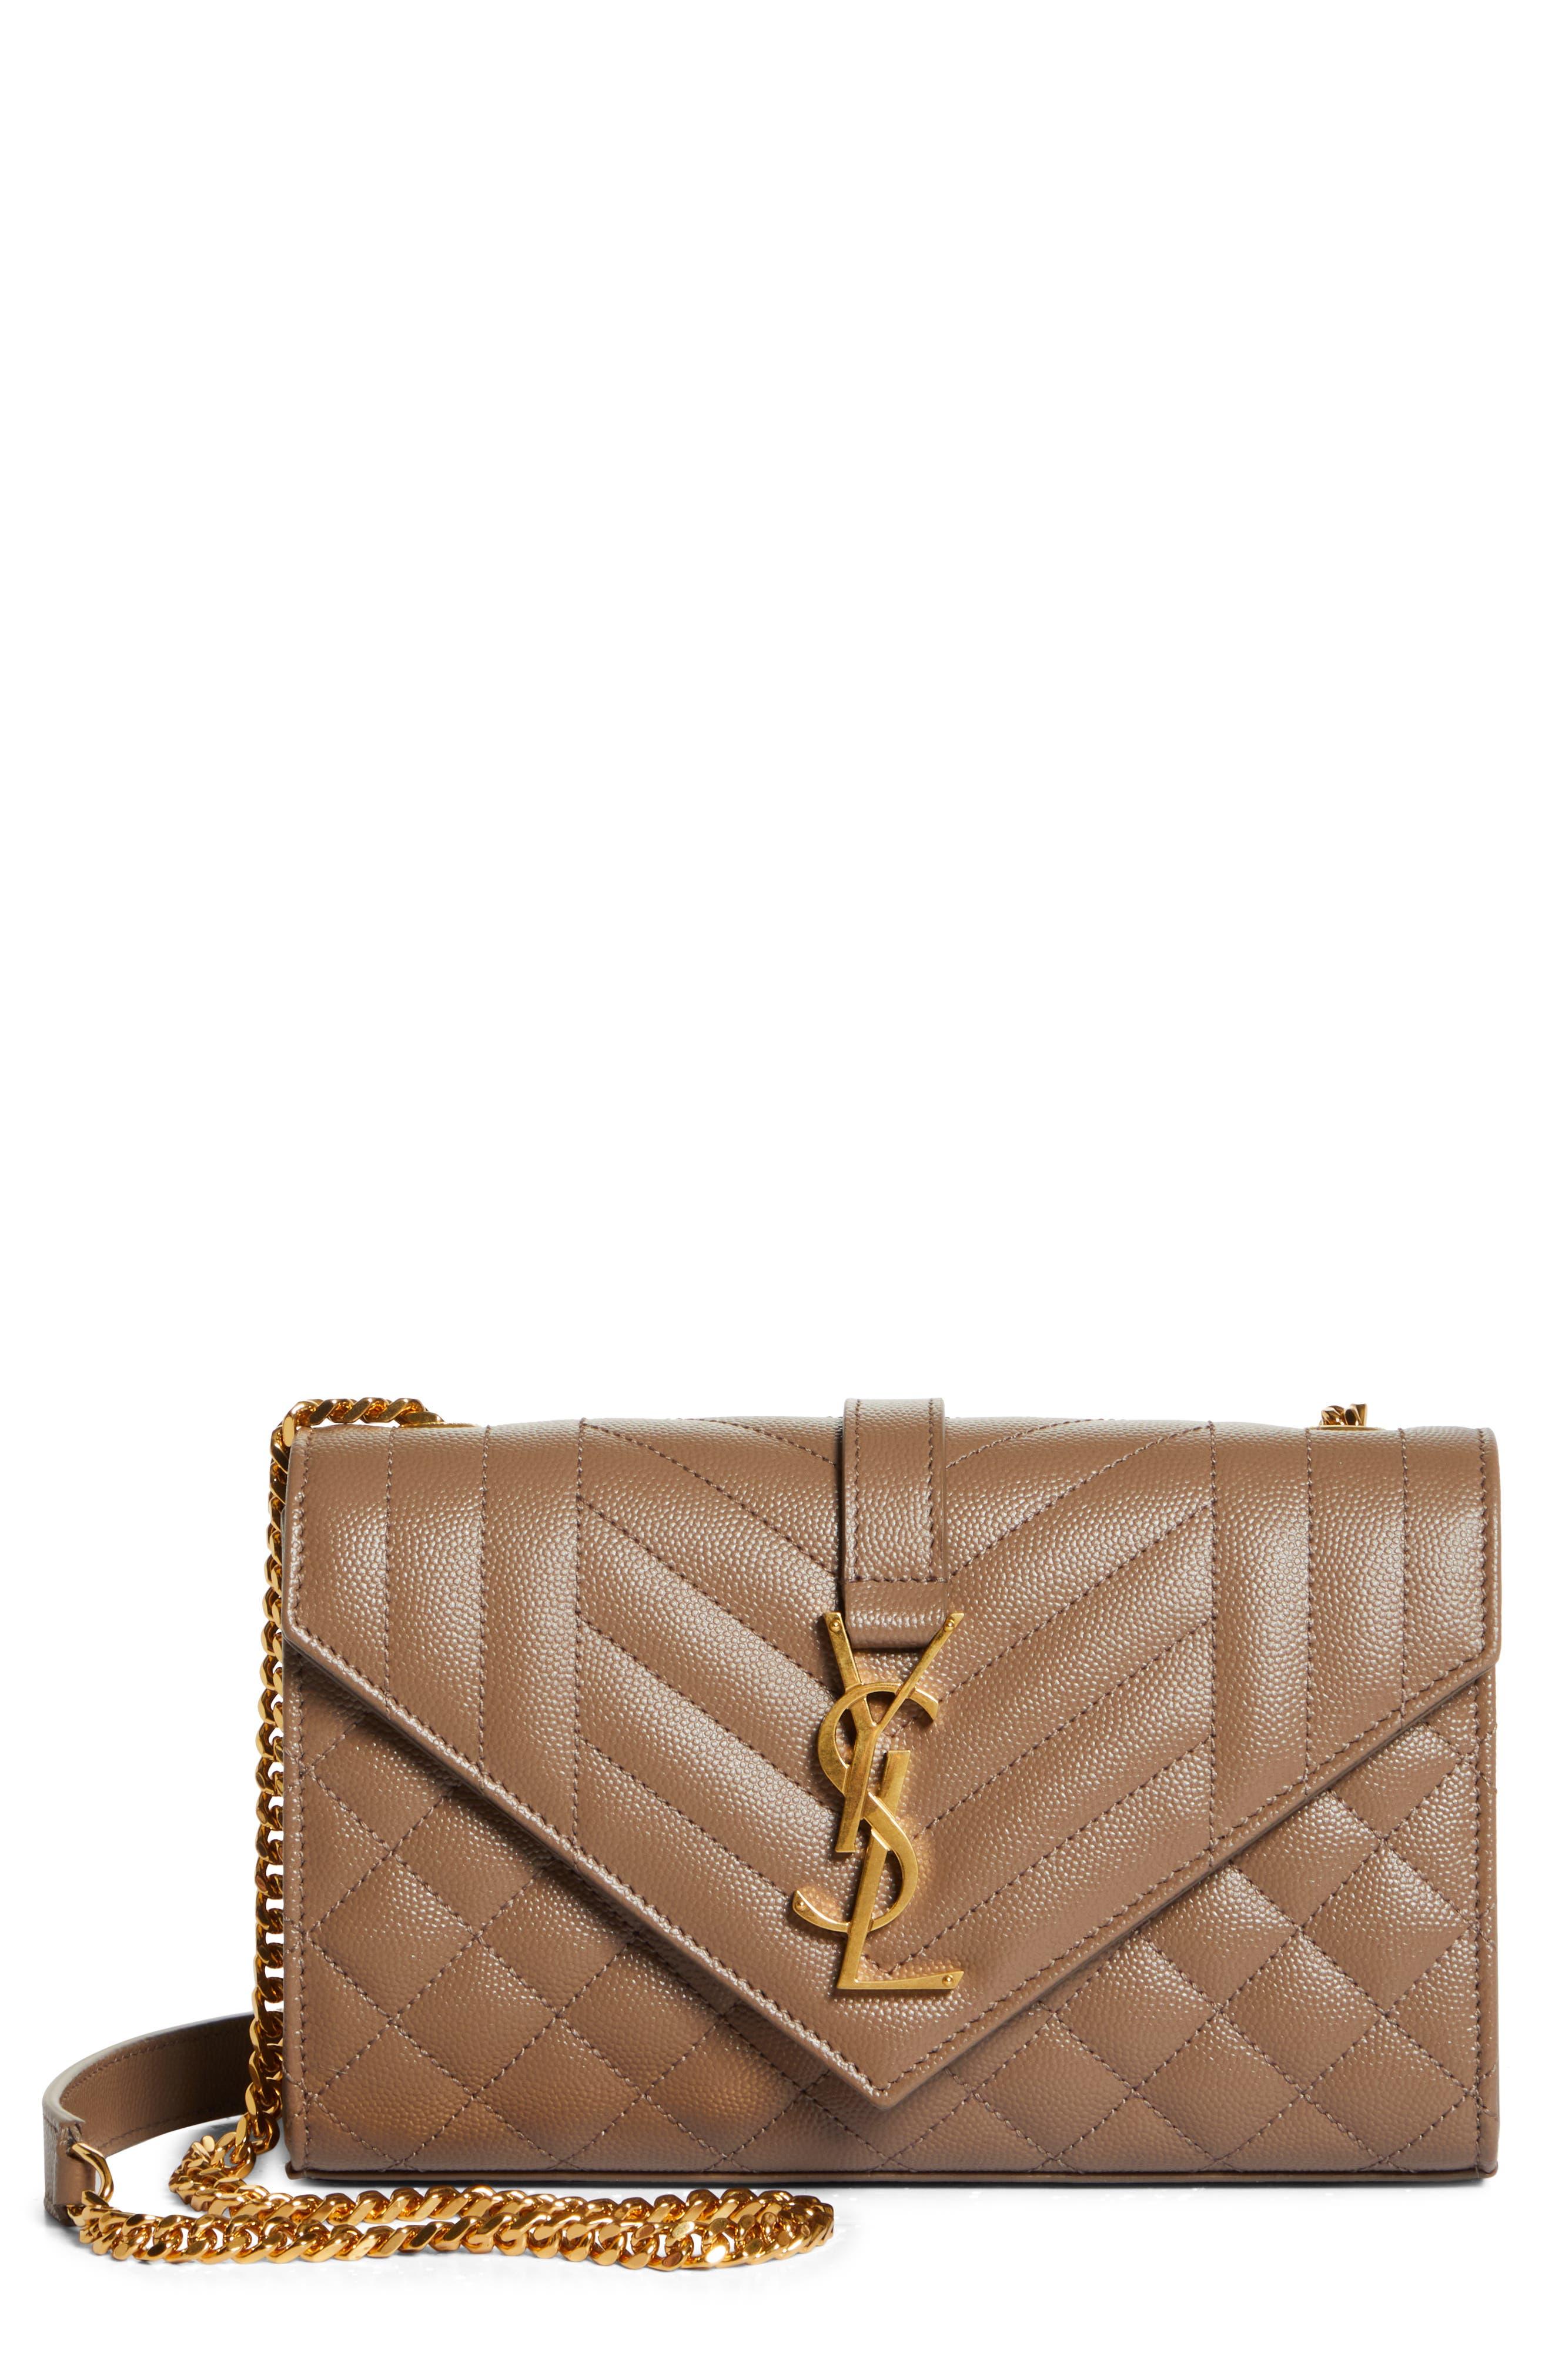 Saint Laurent Small Envelope Calfskin Leather Shoulder Bag in Brown | Lyst